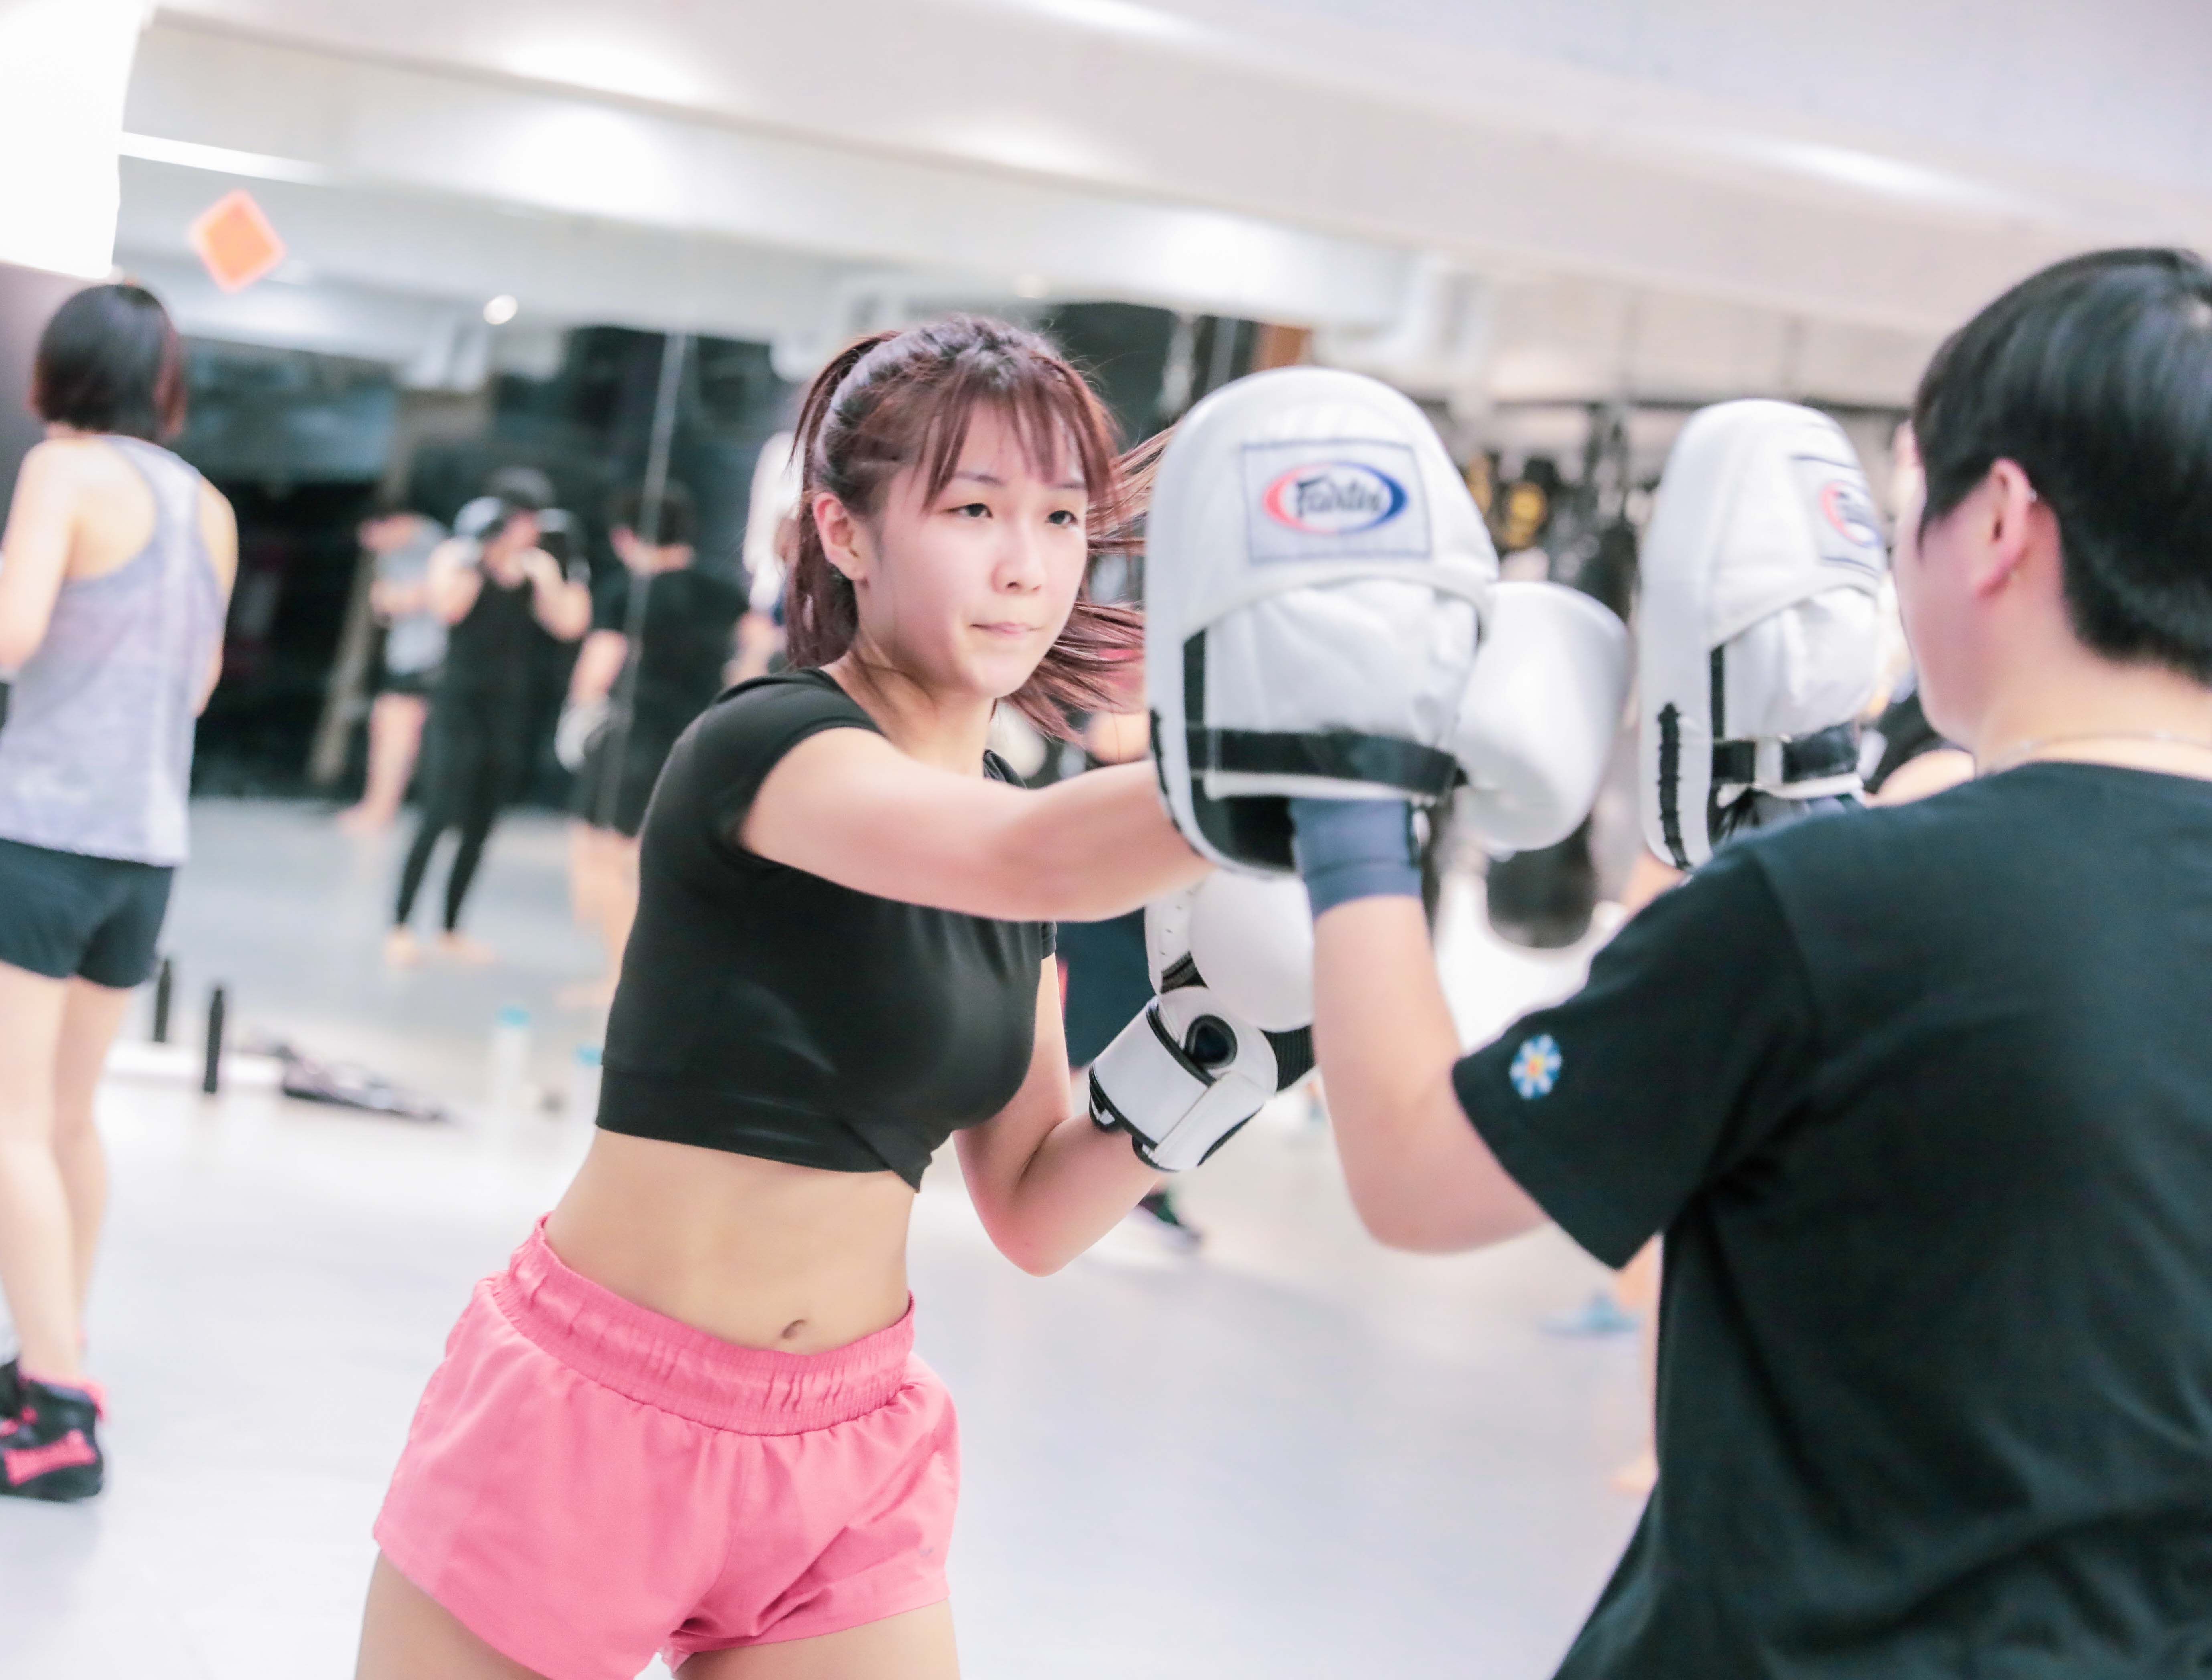 武術運動體驗課程:拳擊